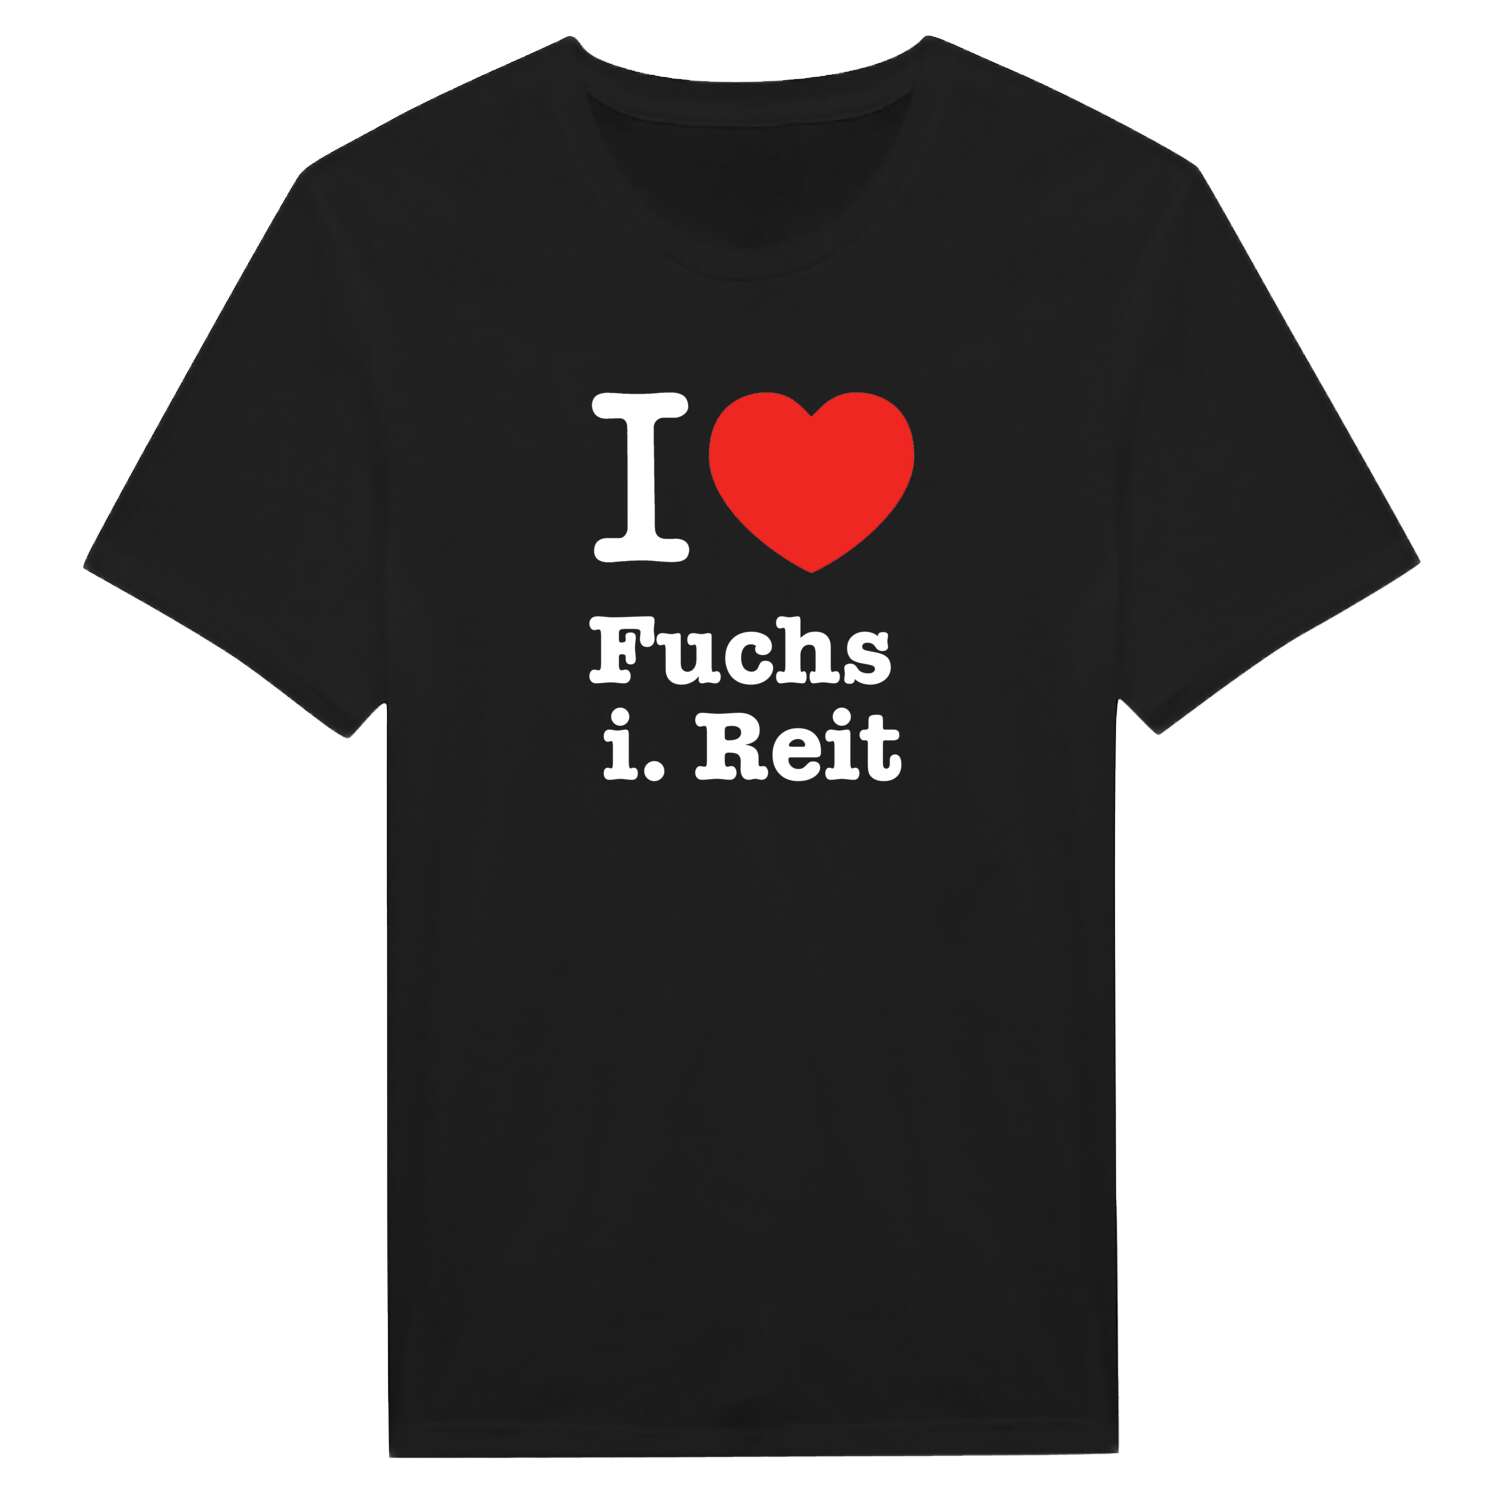 Fuchs i. Reit T-Shirt »I love«